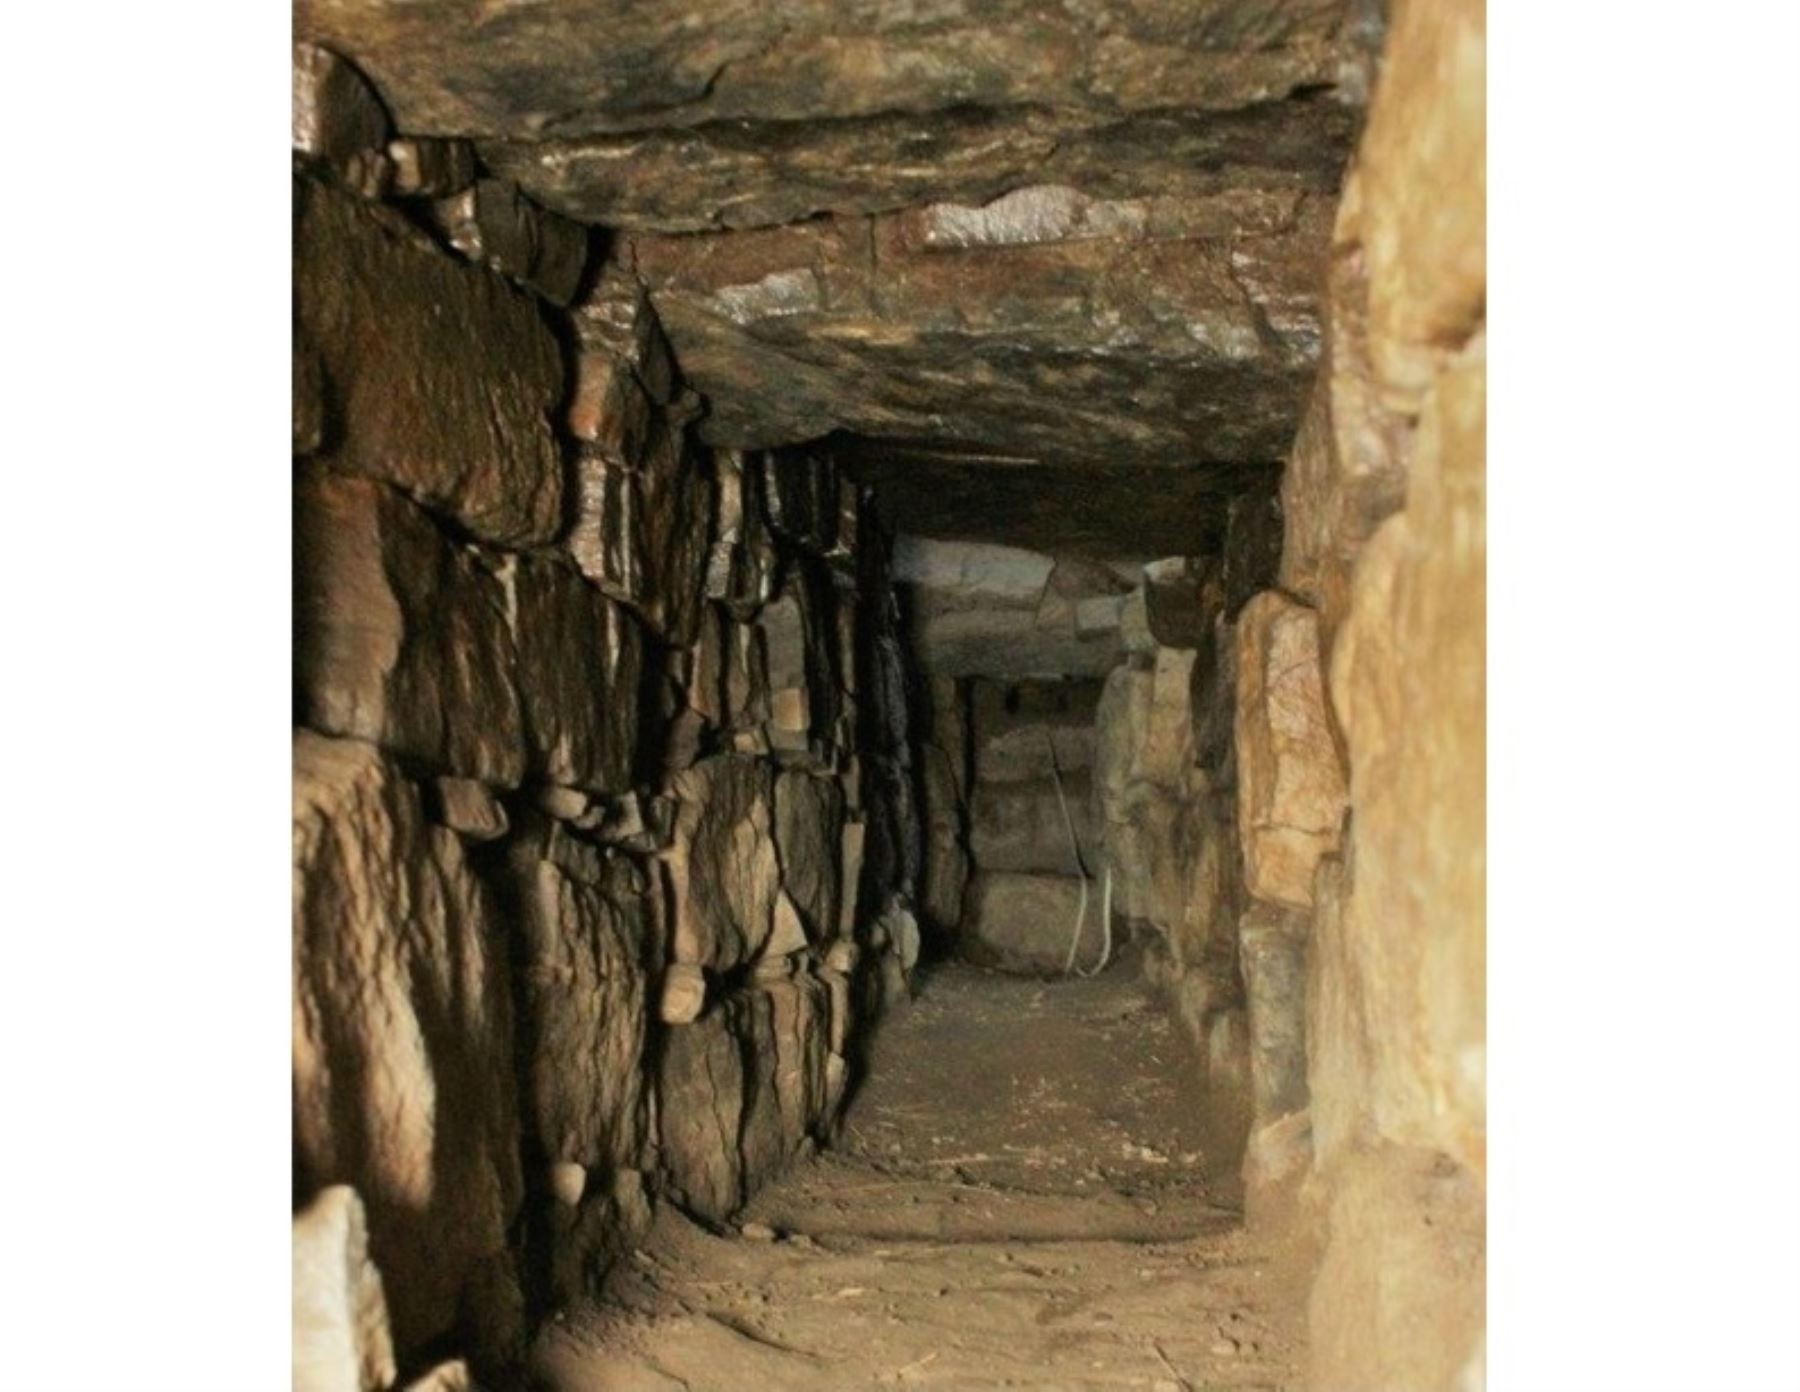 La galería descubierta en el monumento arqueológico Chavín de Huántar tendría una antigüedad de más de 3,000 años y en su interior se hallaron vasijas ceremoniales.